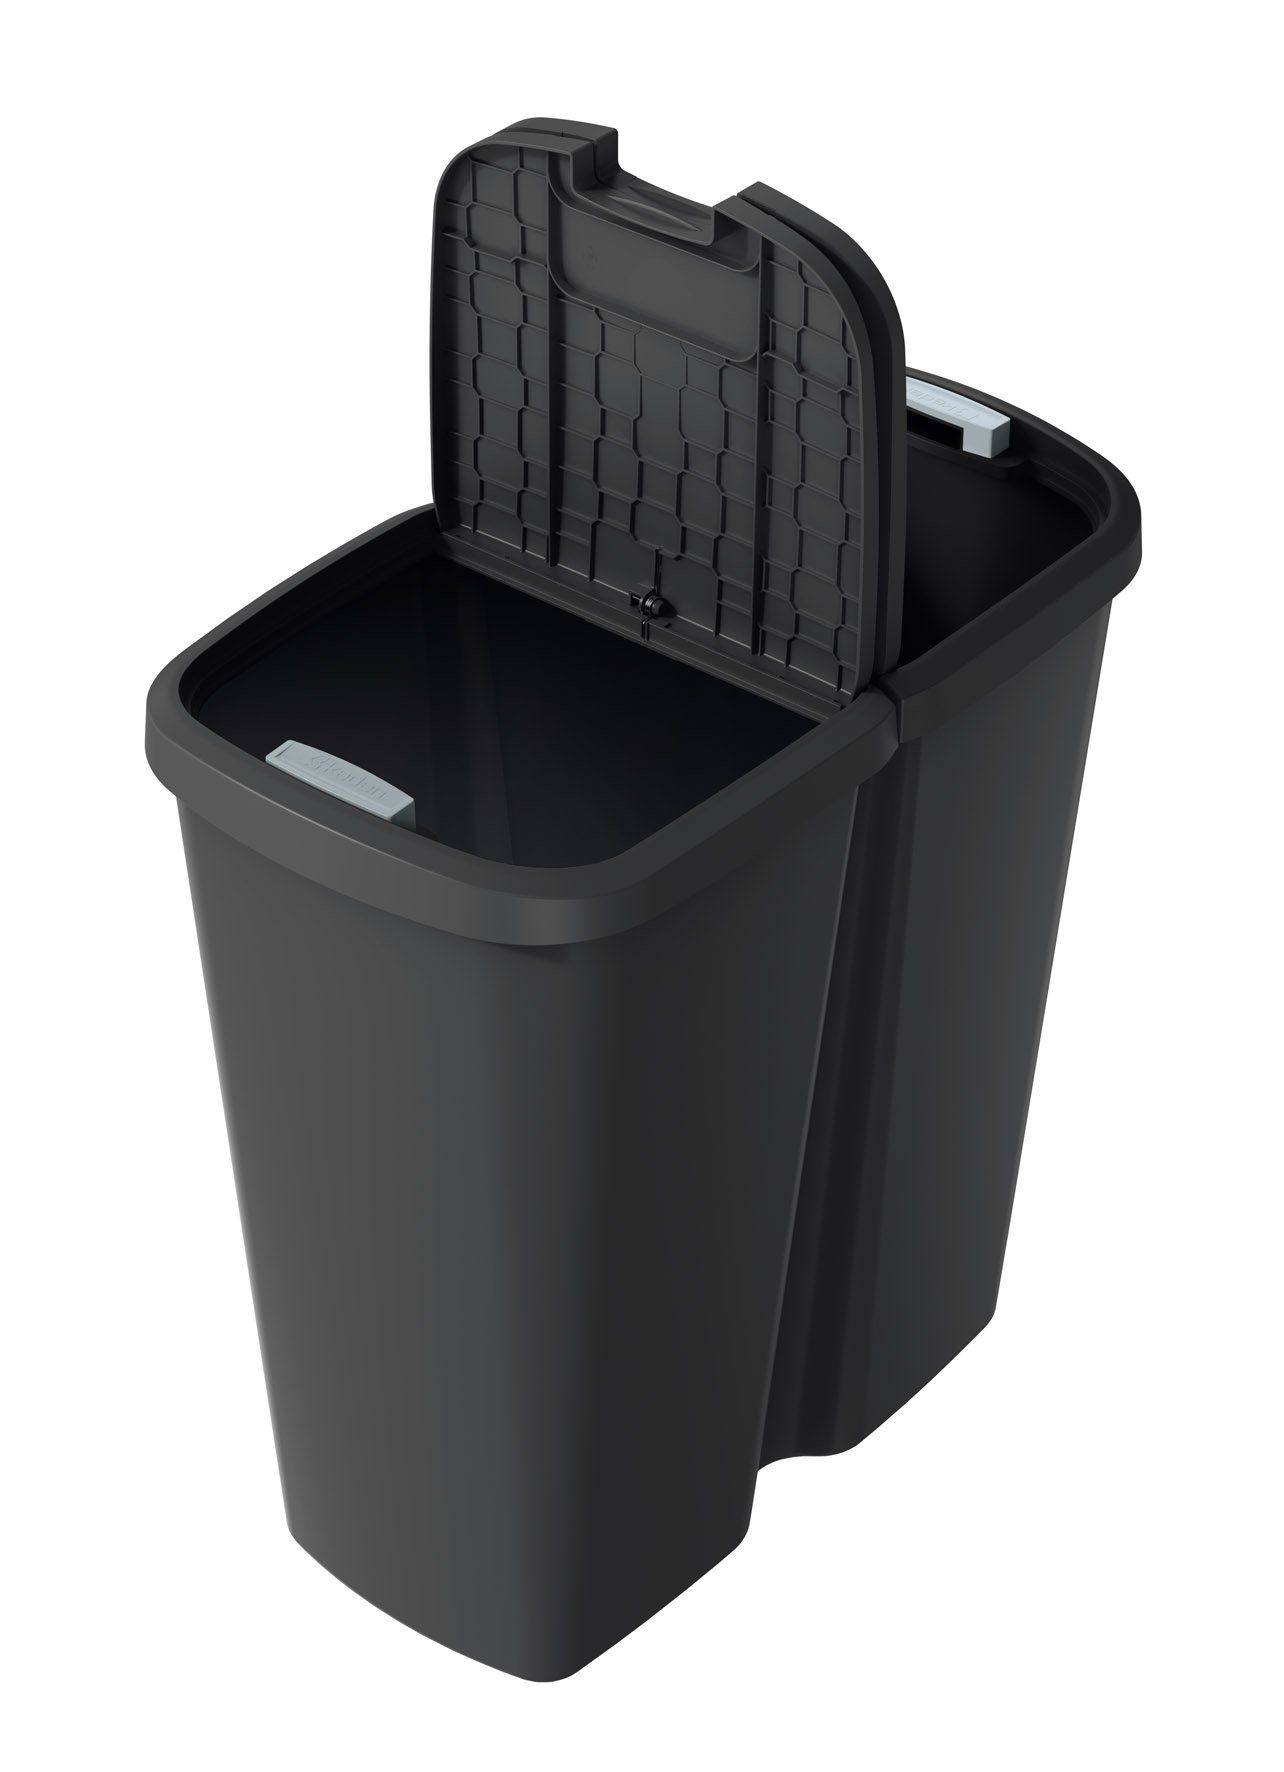 schwarz - Abfalleimer / Liter Spetebo 45 mit 2 Deckelöffnungen eckig Mülleimer Mülleimer schwarz Kunststoff Duo schwarz,